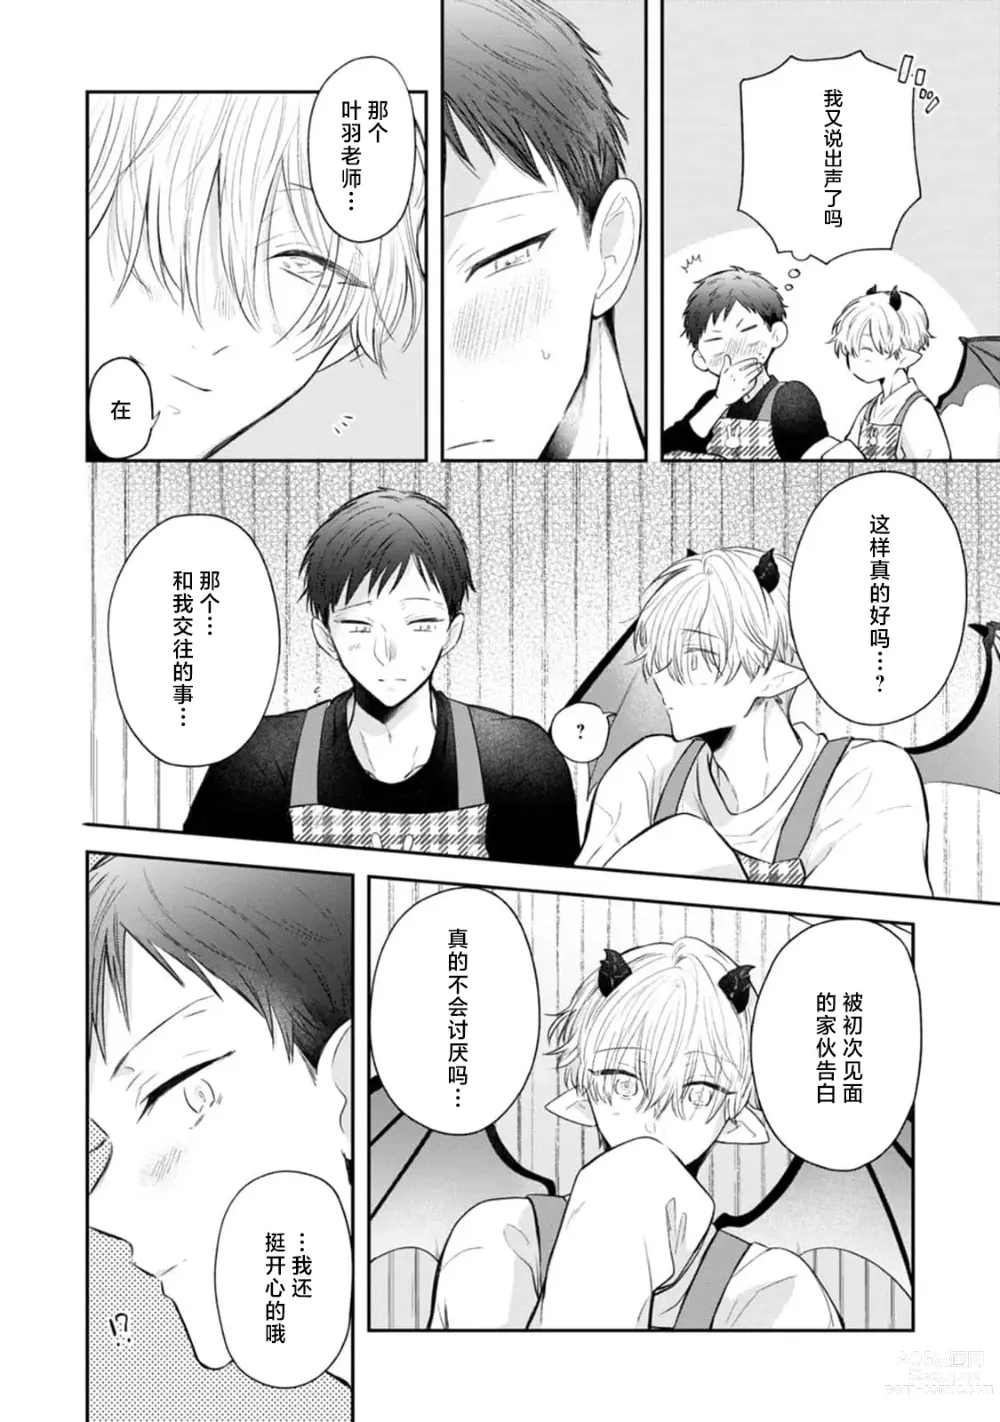 Page 22 of manga 叶羽老师全部是第一次 1-4